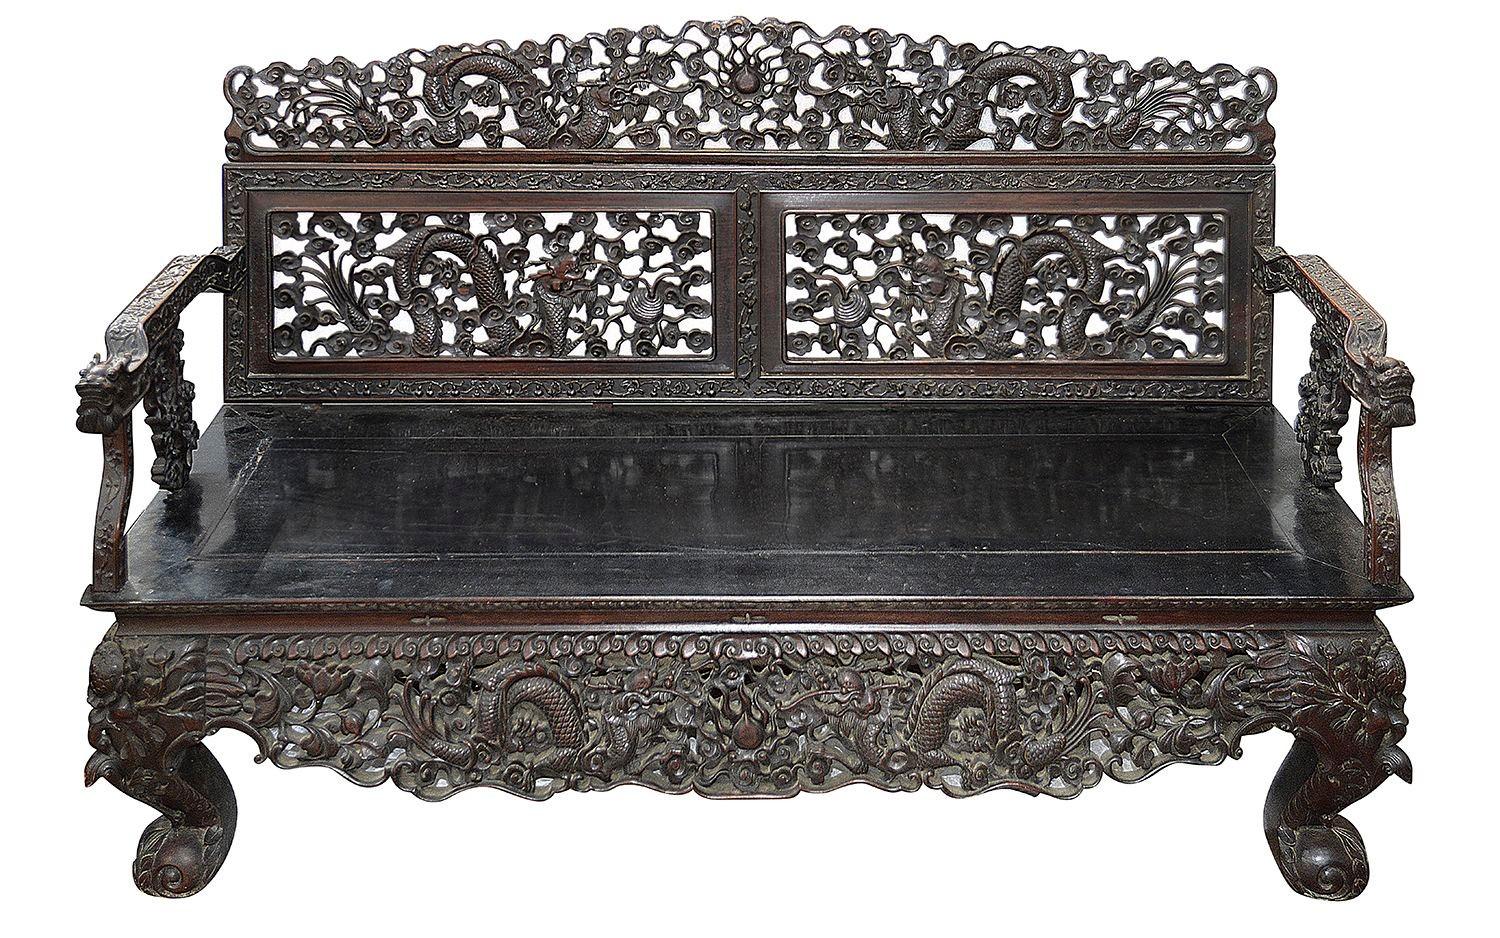 Eine sehr gute Qualität 19. Jahrhundert chinesische Hartholz Dreisitzer-Sofa, mit wunderbaren klassischen Hand geschnitzt und durchbohrt scrolling foliate Dekoration mit Drachen verschlungen. Die Sitzfläche ist mit Einsätzen versehen und steht auf